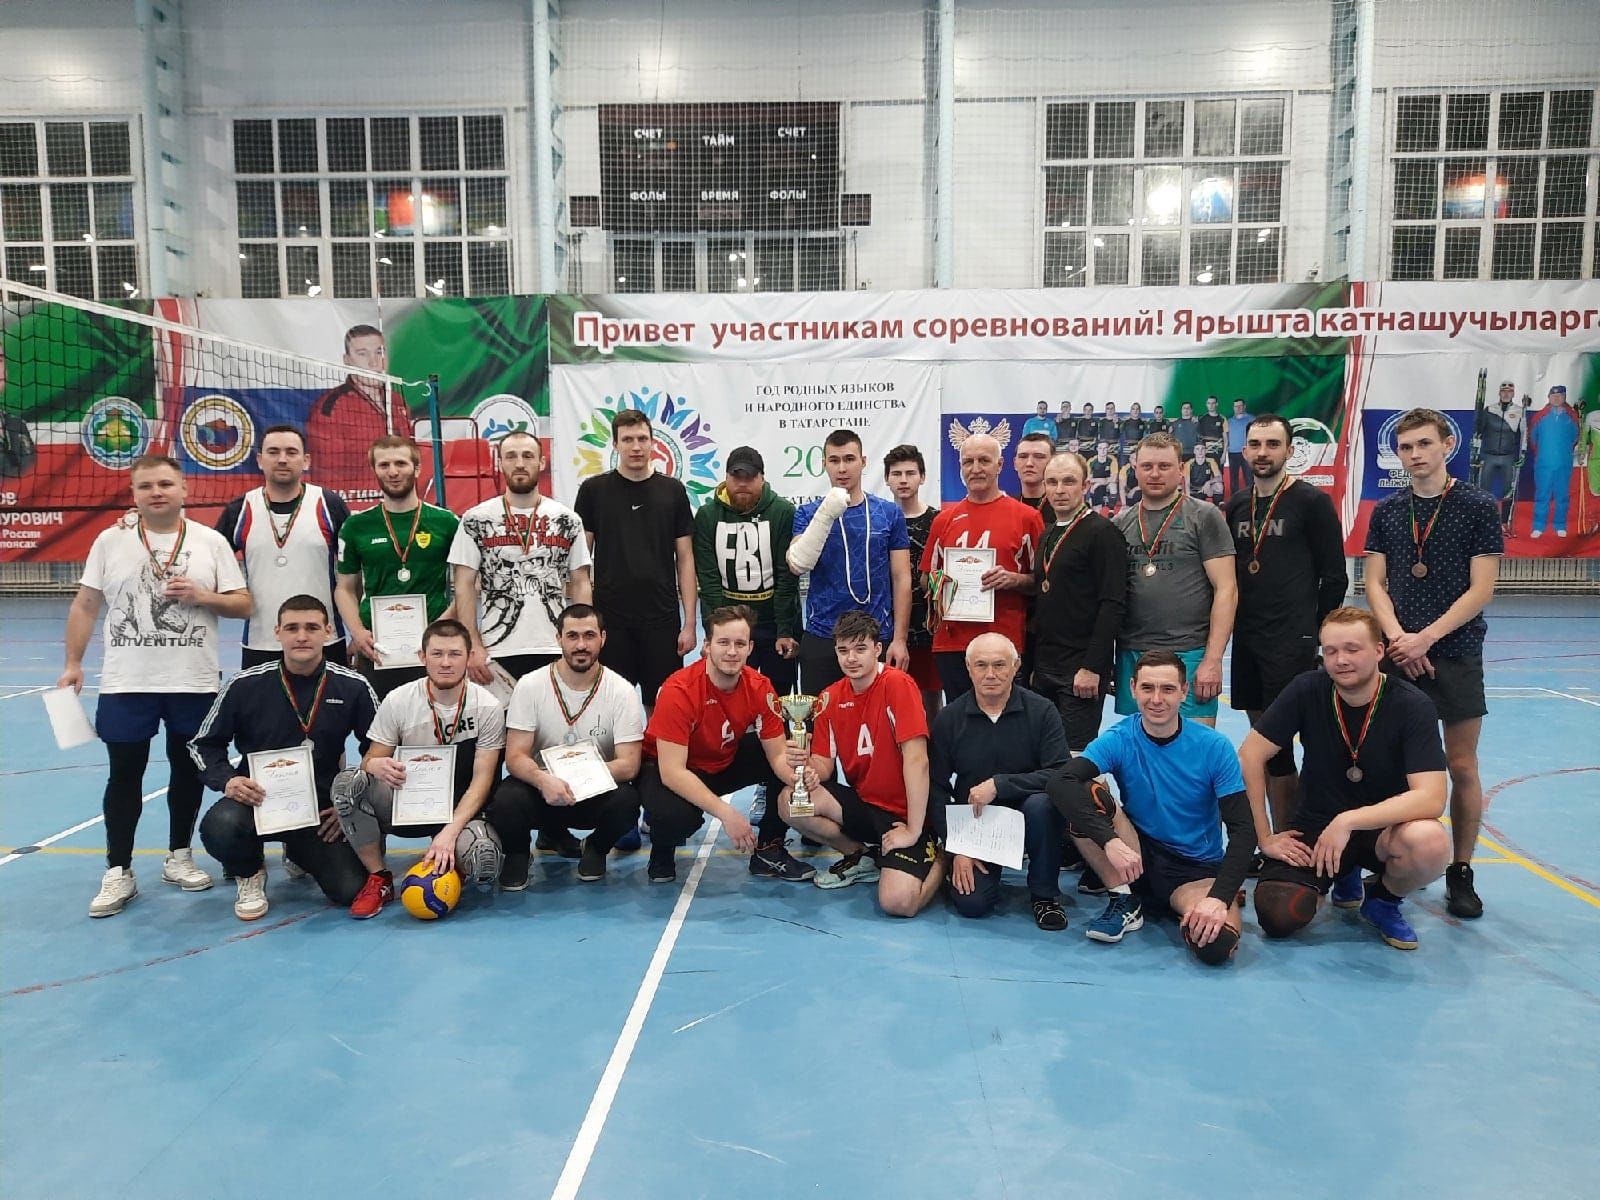 Команда «Олимп» стала обладателем Кубка Главы района по волейболу